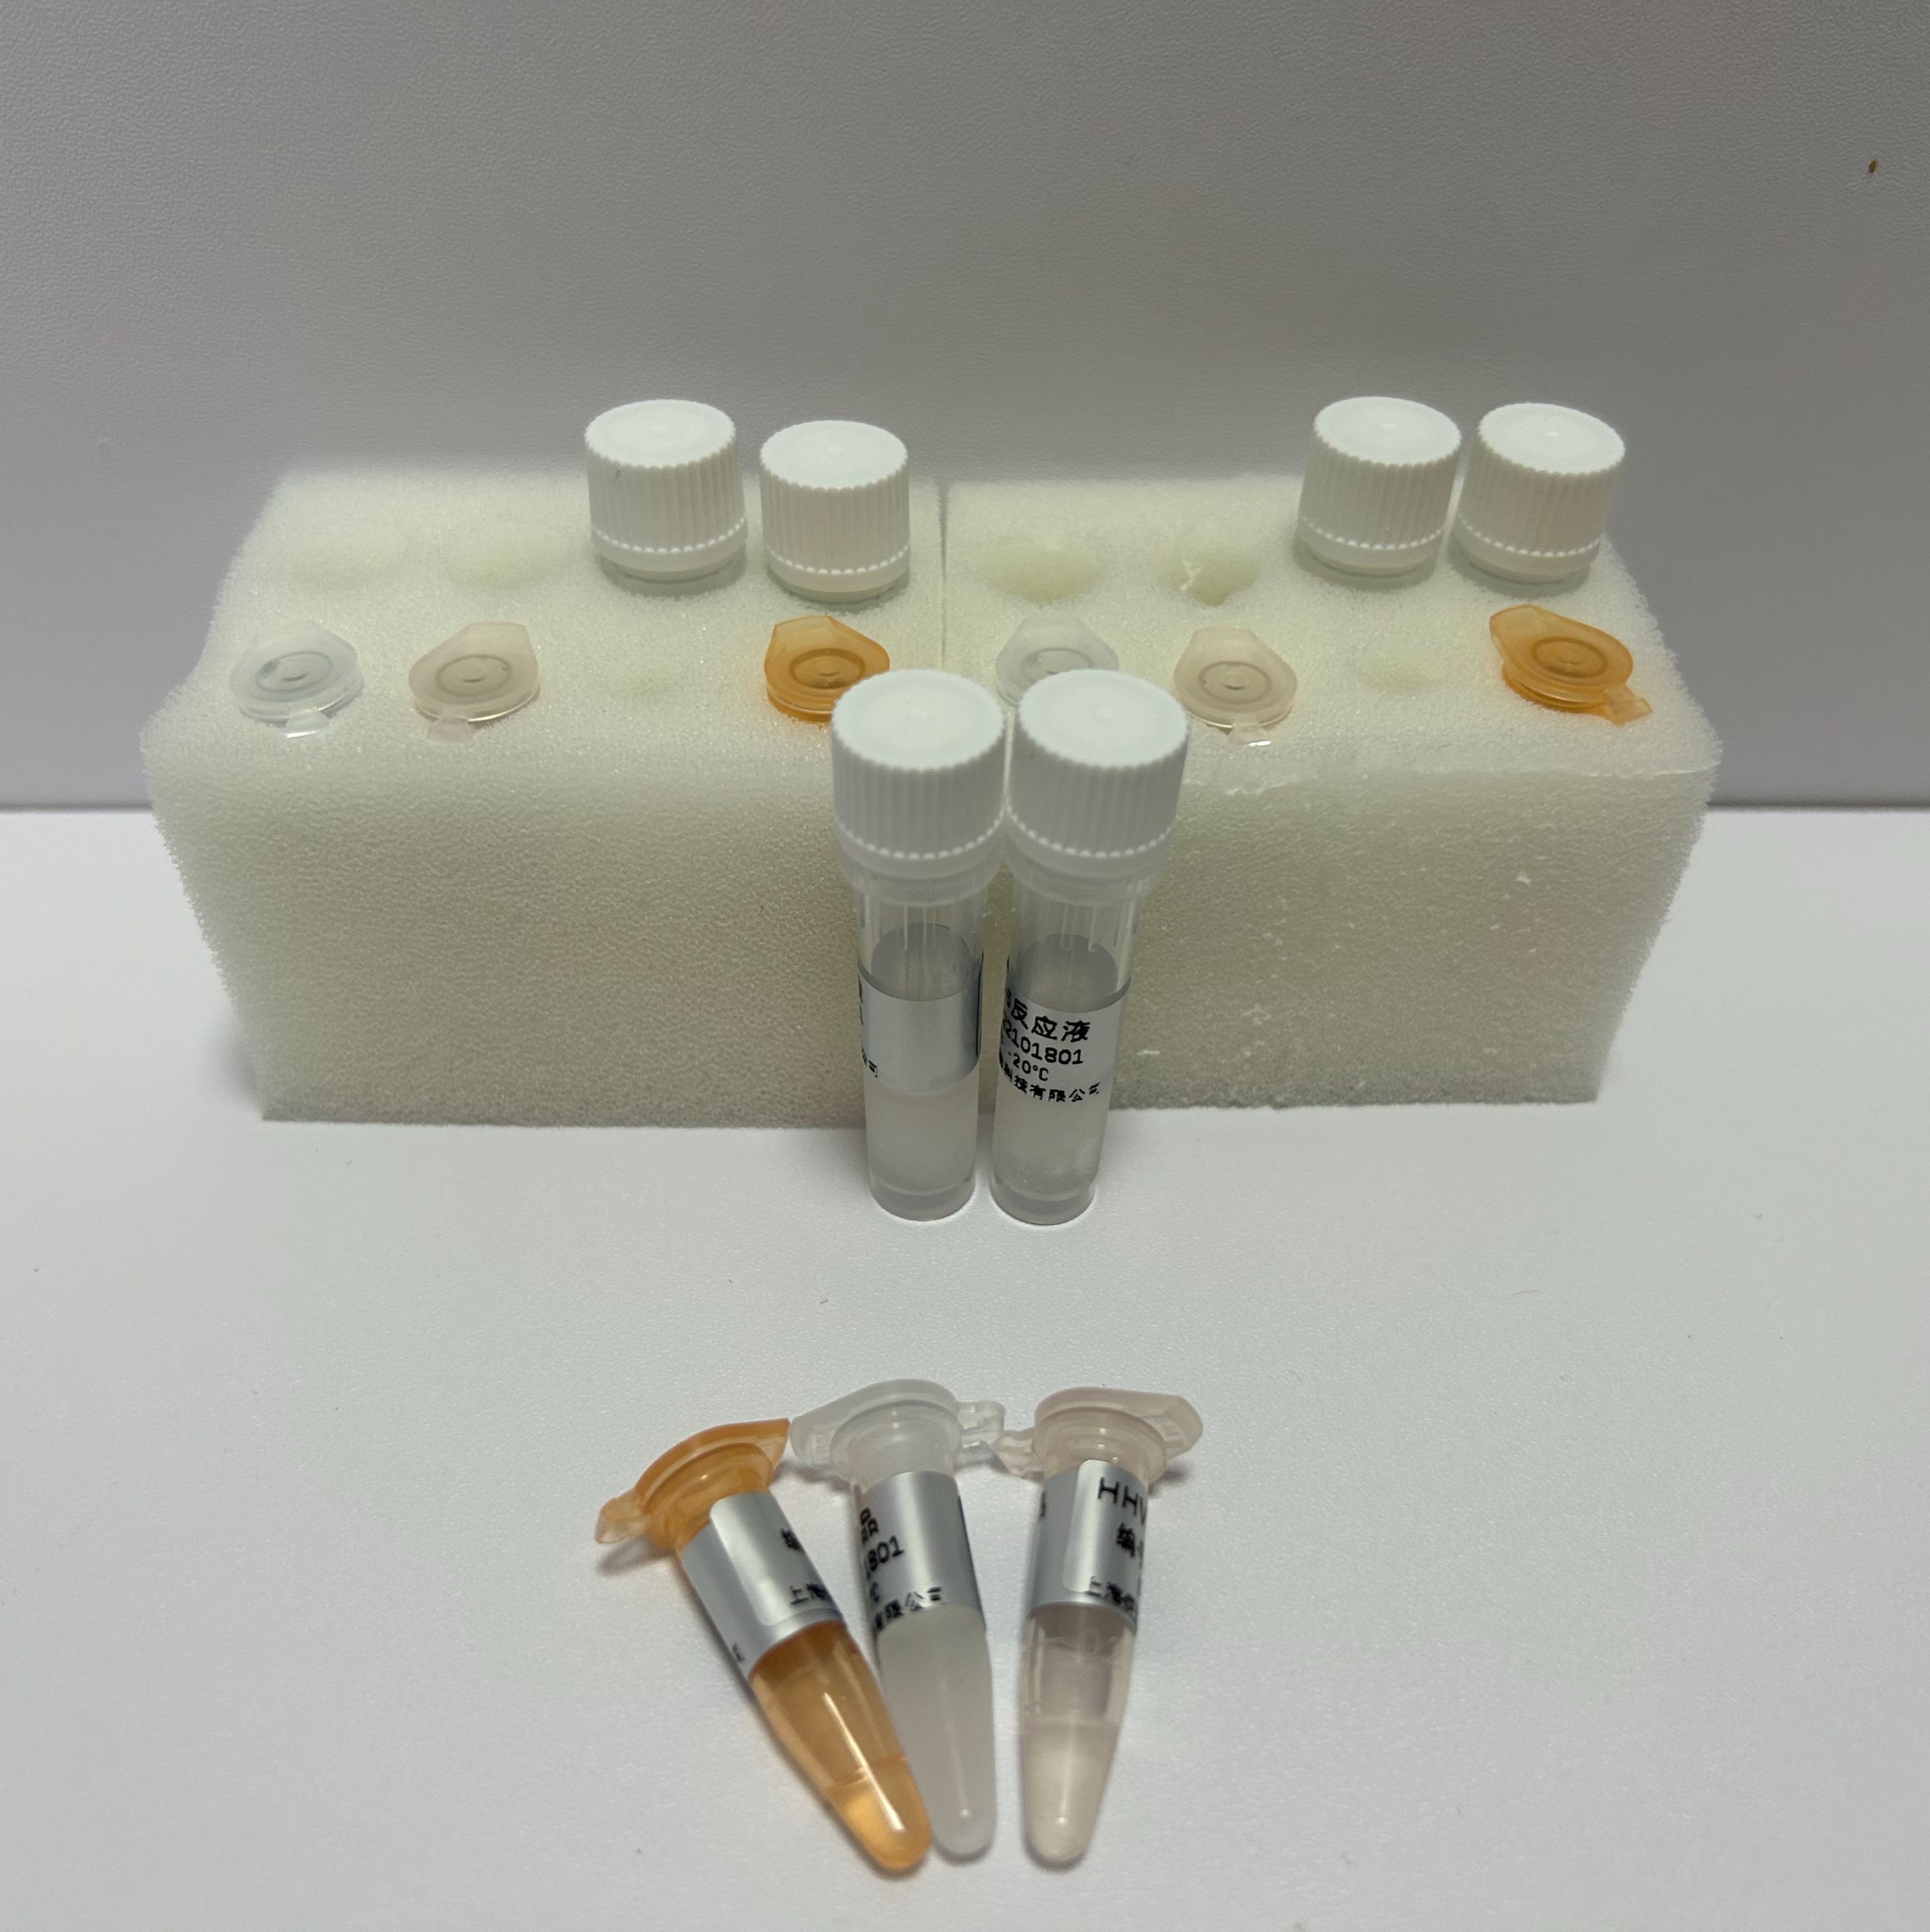 禽腺病毒（I群）探针法荧光定量PCR试剂盒